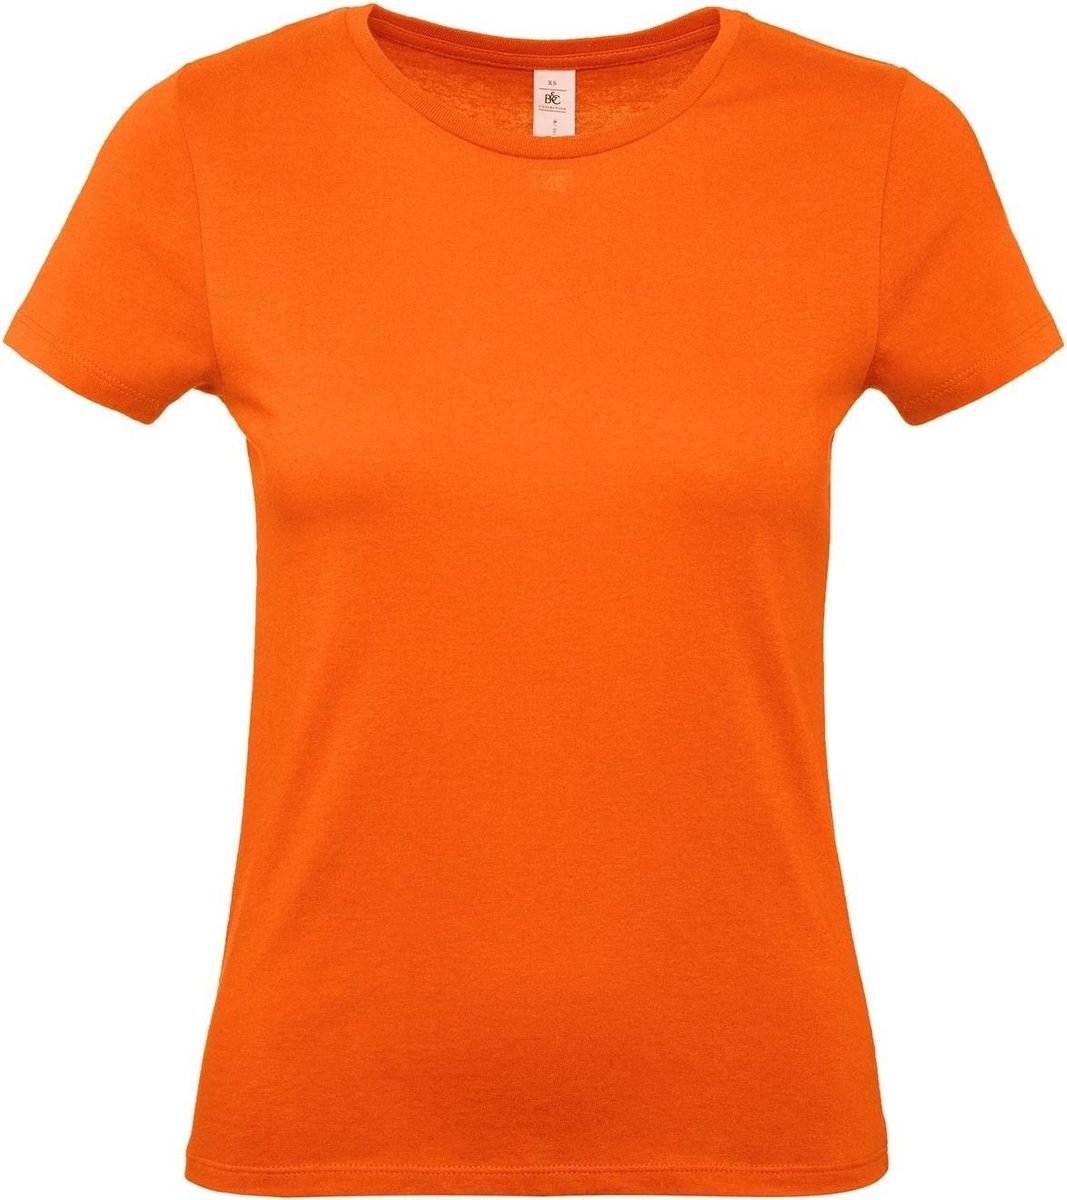 Oranje t-shirts met ronde hals voor dames - 100% katoen - Koningsdag / Nederland supporter S (36)